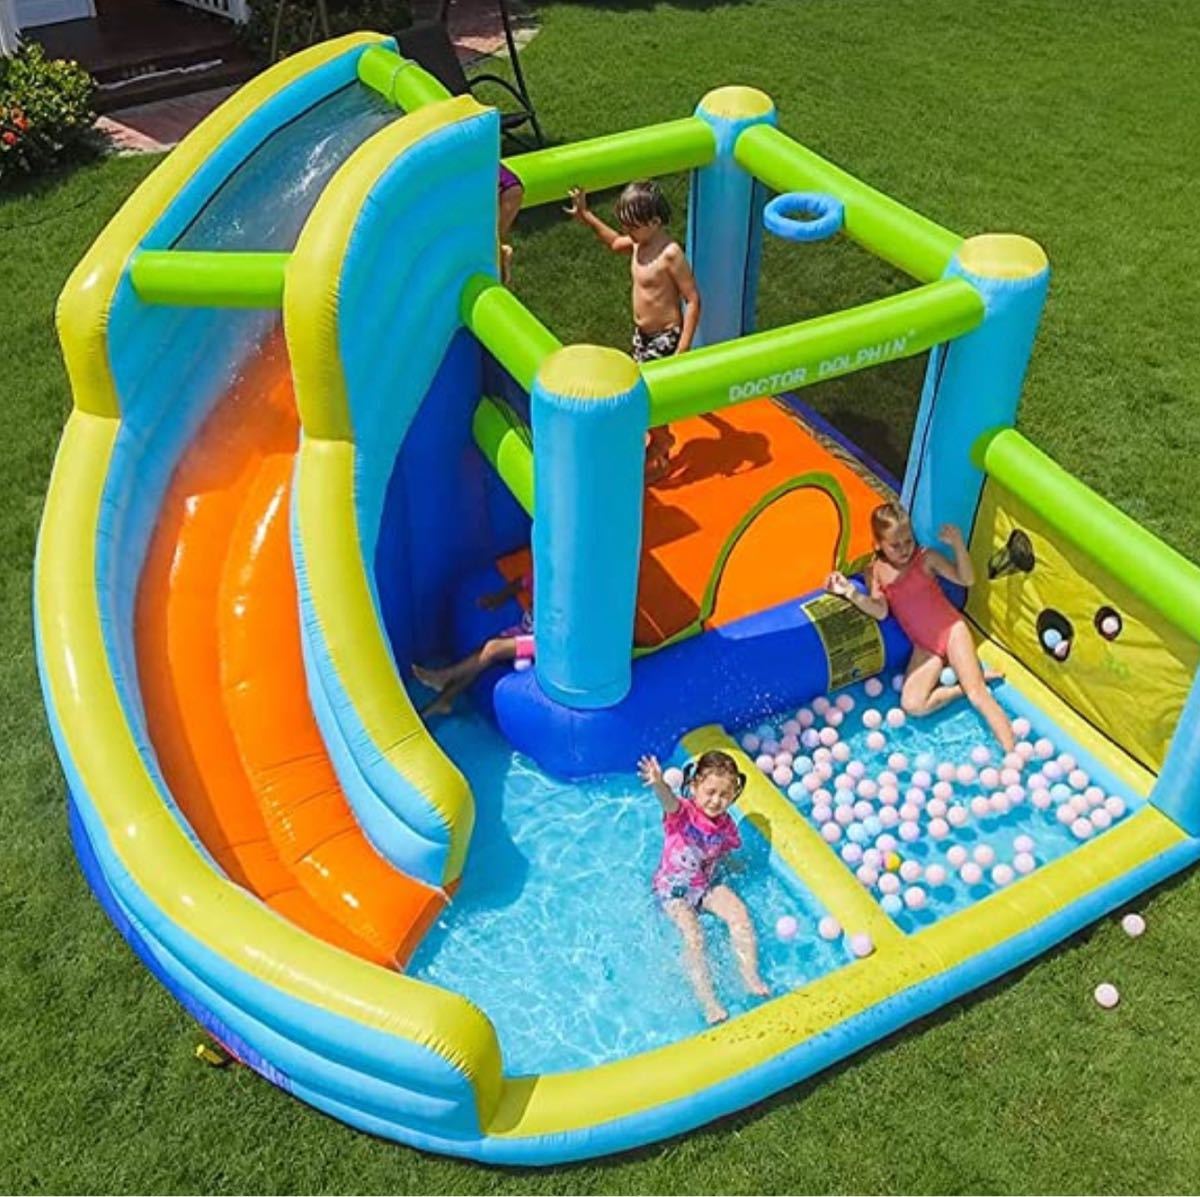 家庭用プール 子供用プール ウォータースライダー 季節玩具 水遊び www